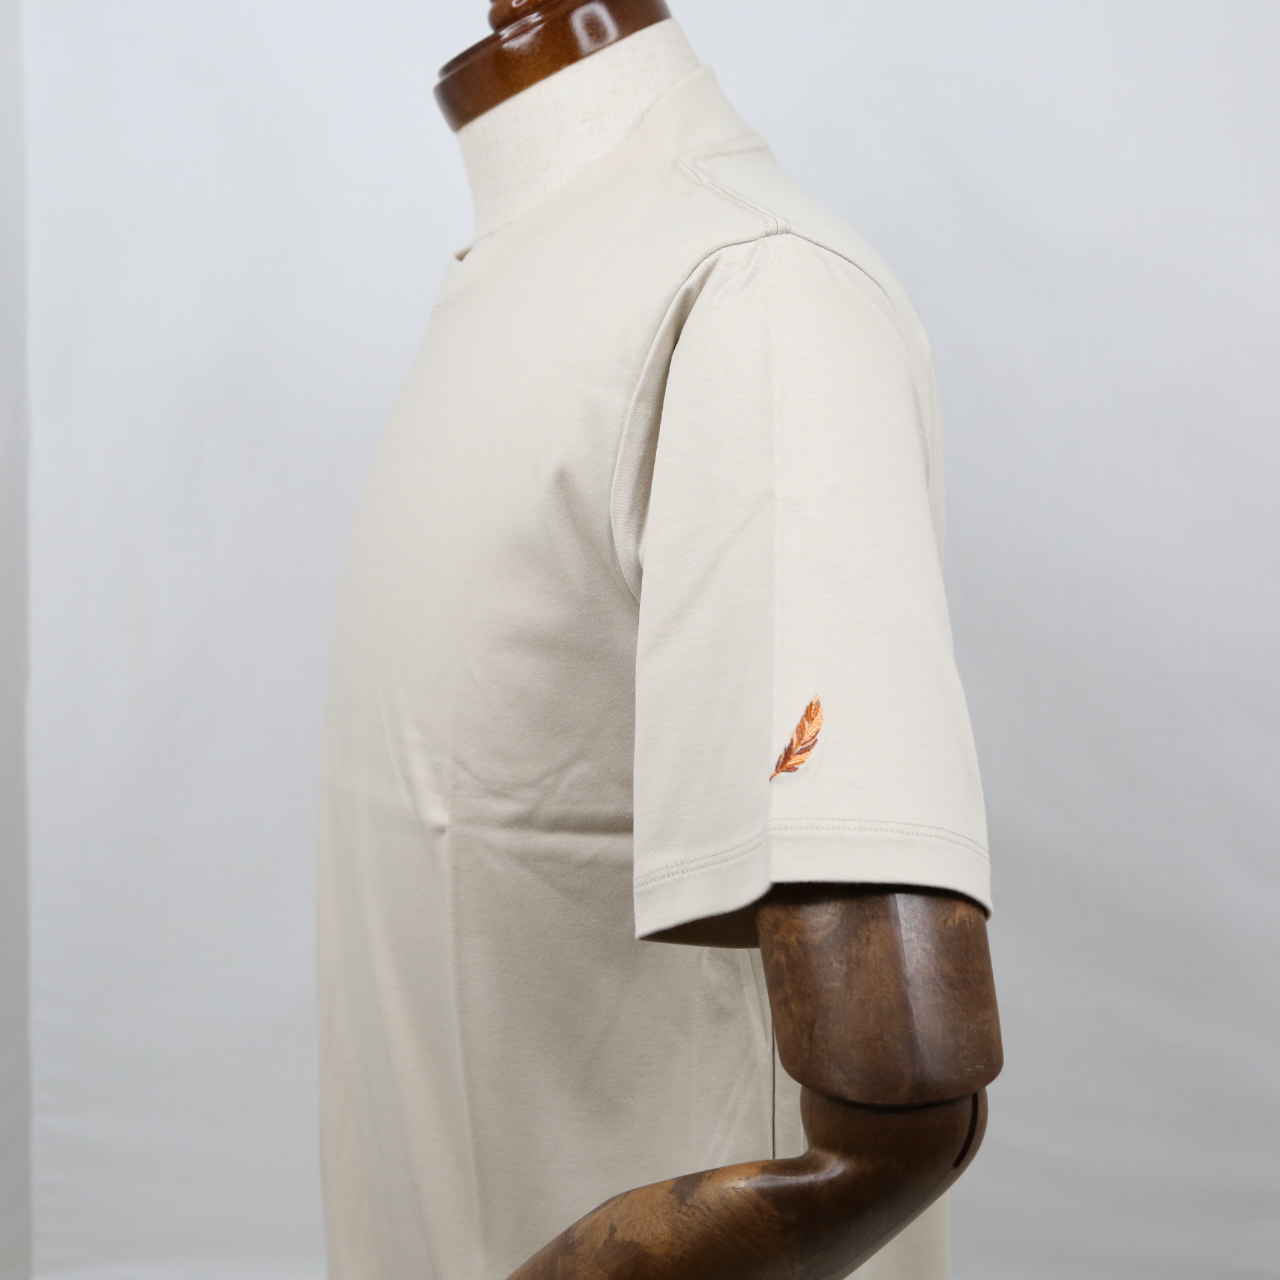 プレミアムドレス Tシャツ  FATTURA  シャツ  半袖  袖口刺繍  ベージュ  日本製